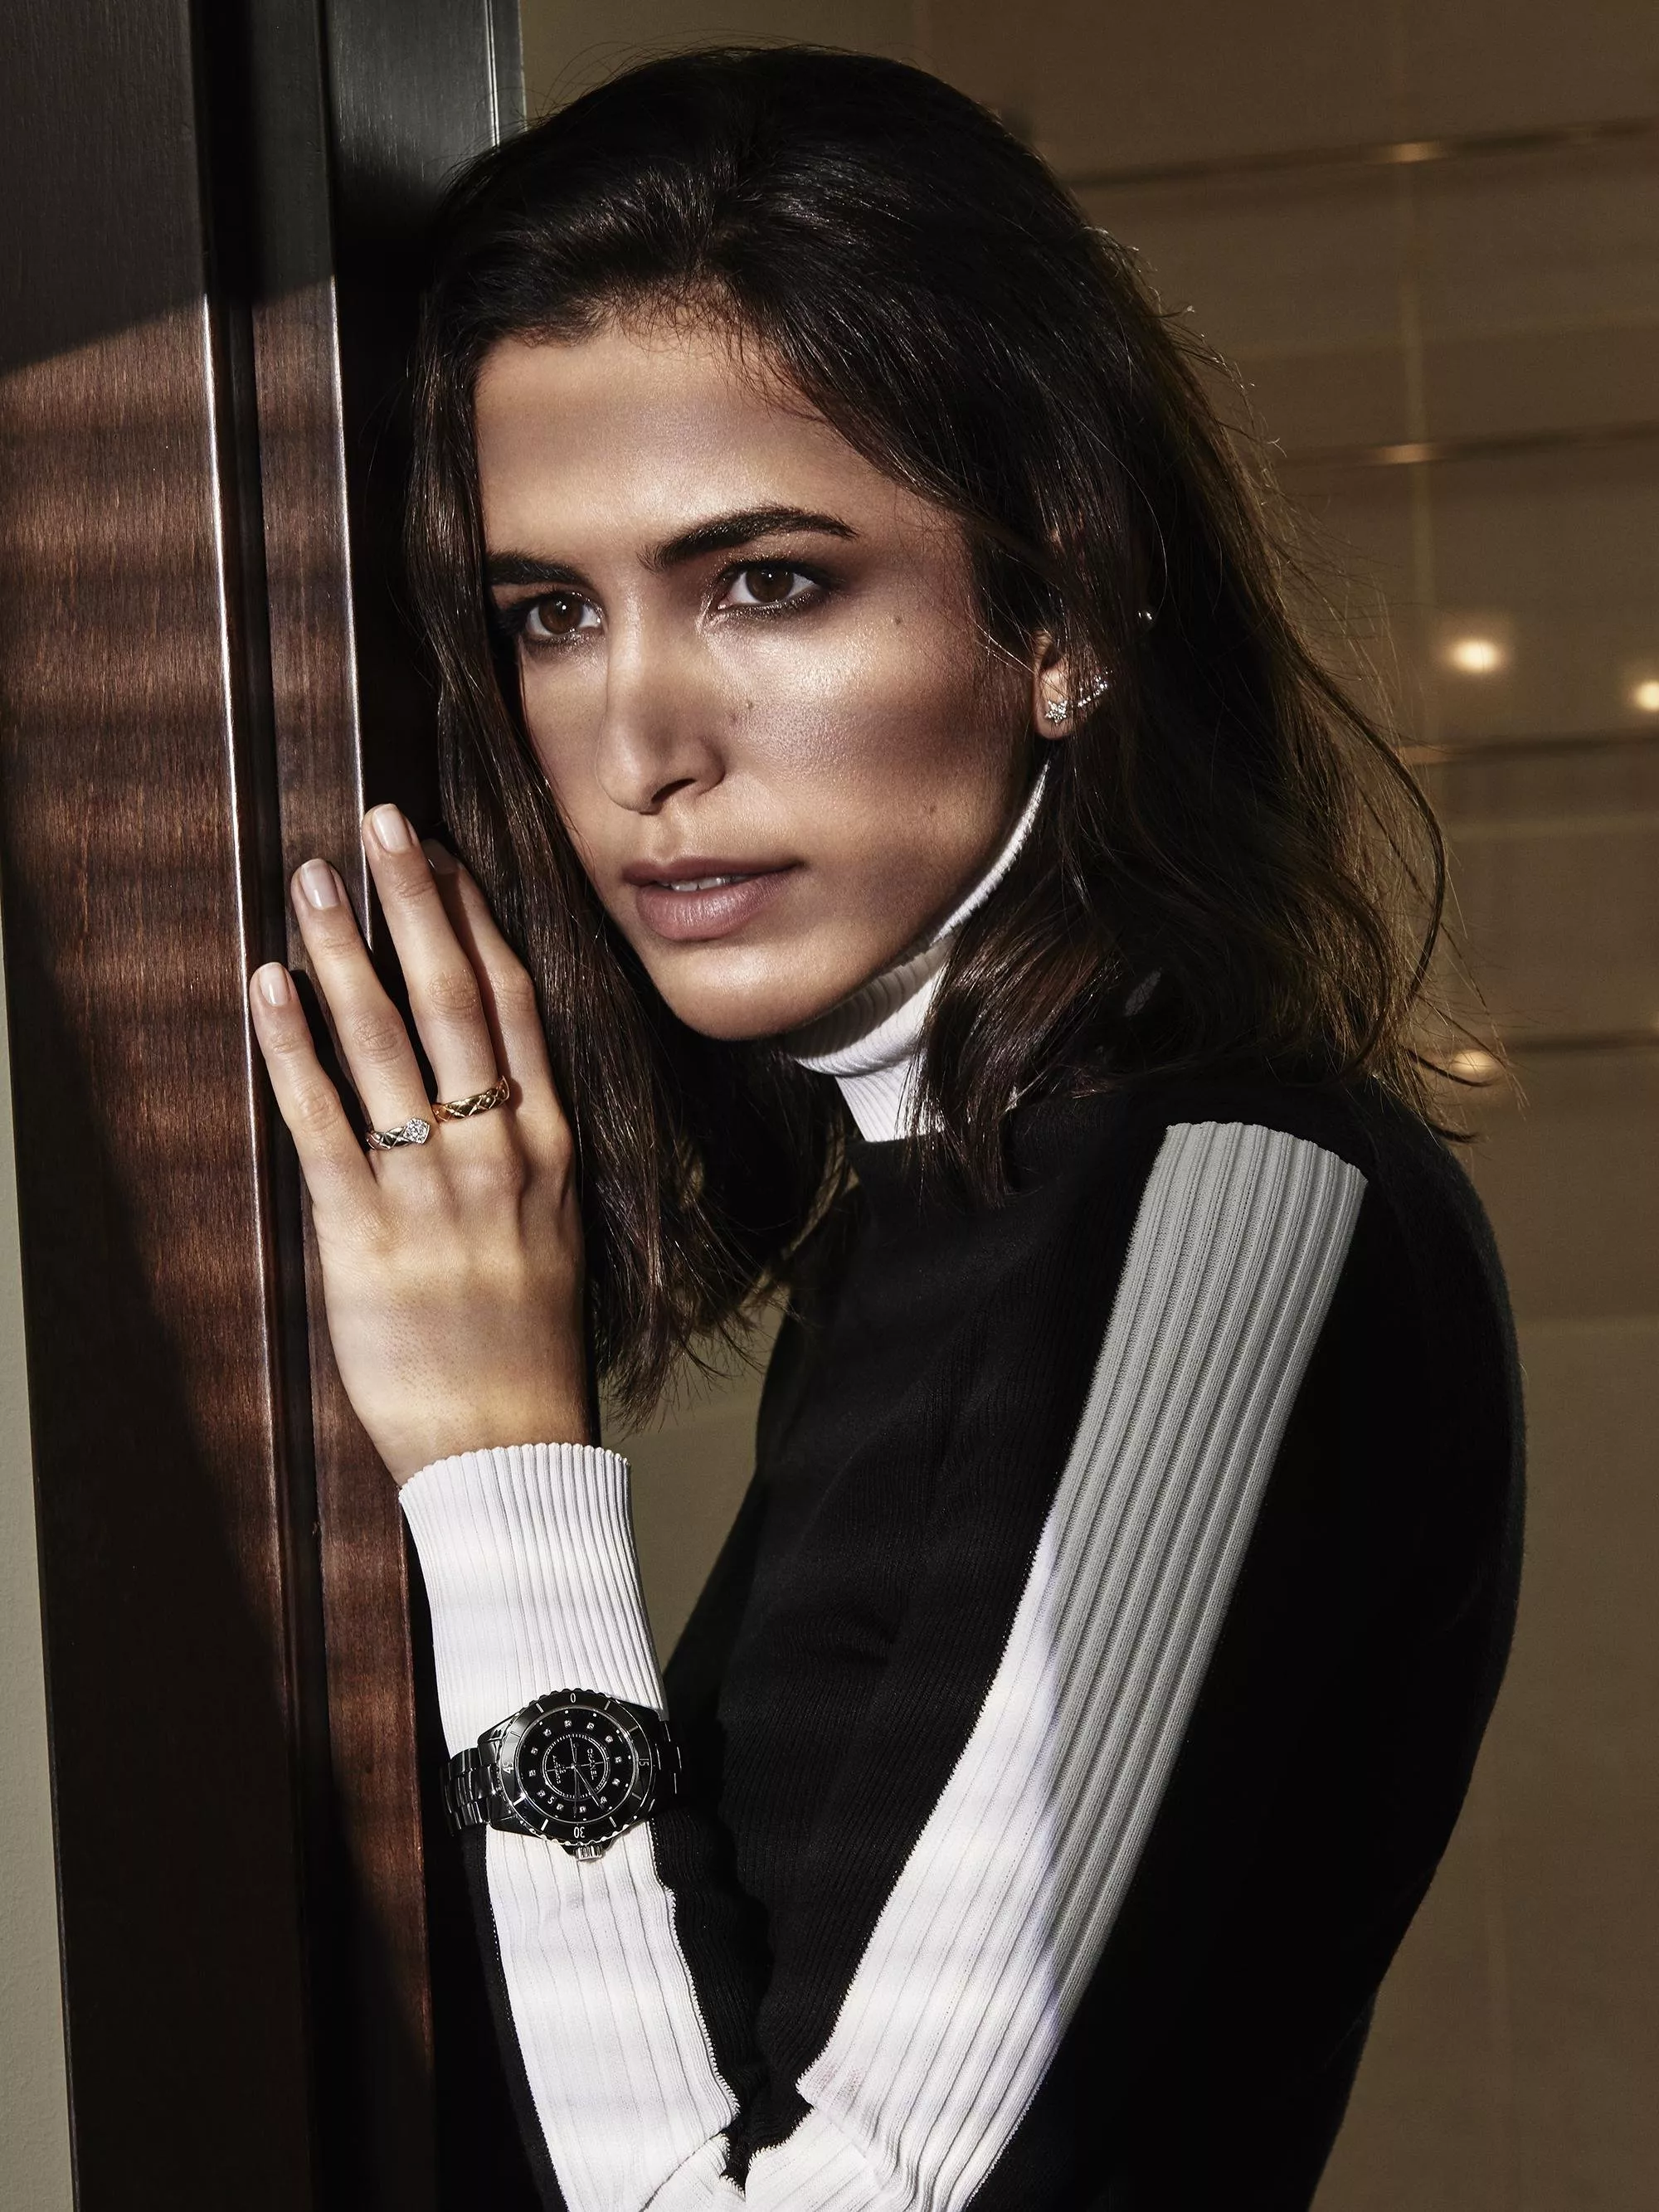 ساعة J12 الجديدة من Chanel: تحاكي المرأة الطموحة والقوية